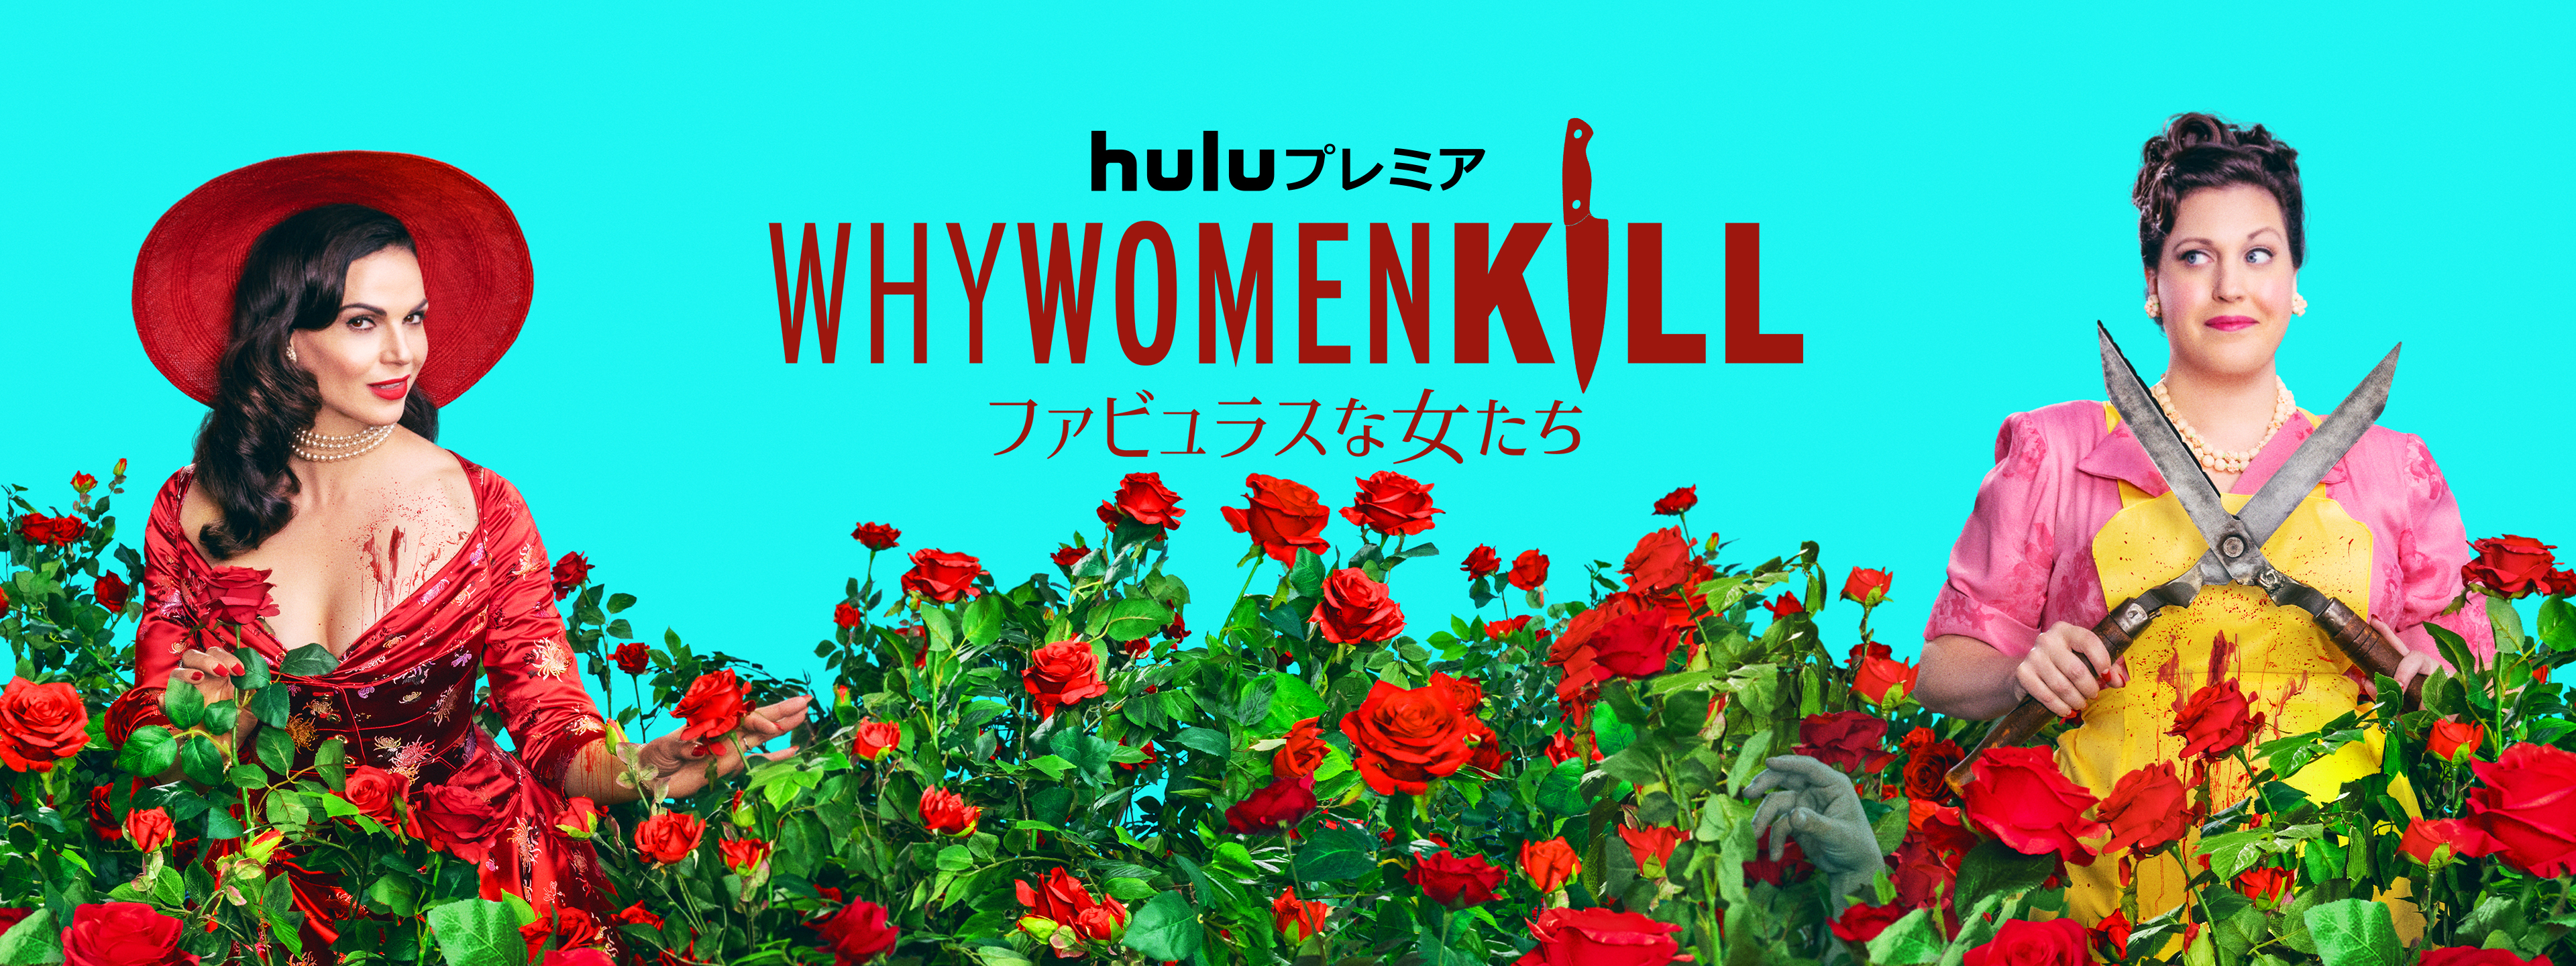 Why Women Kill 〜ファビュラスな女たち〜 | Hulu(フールー)